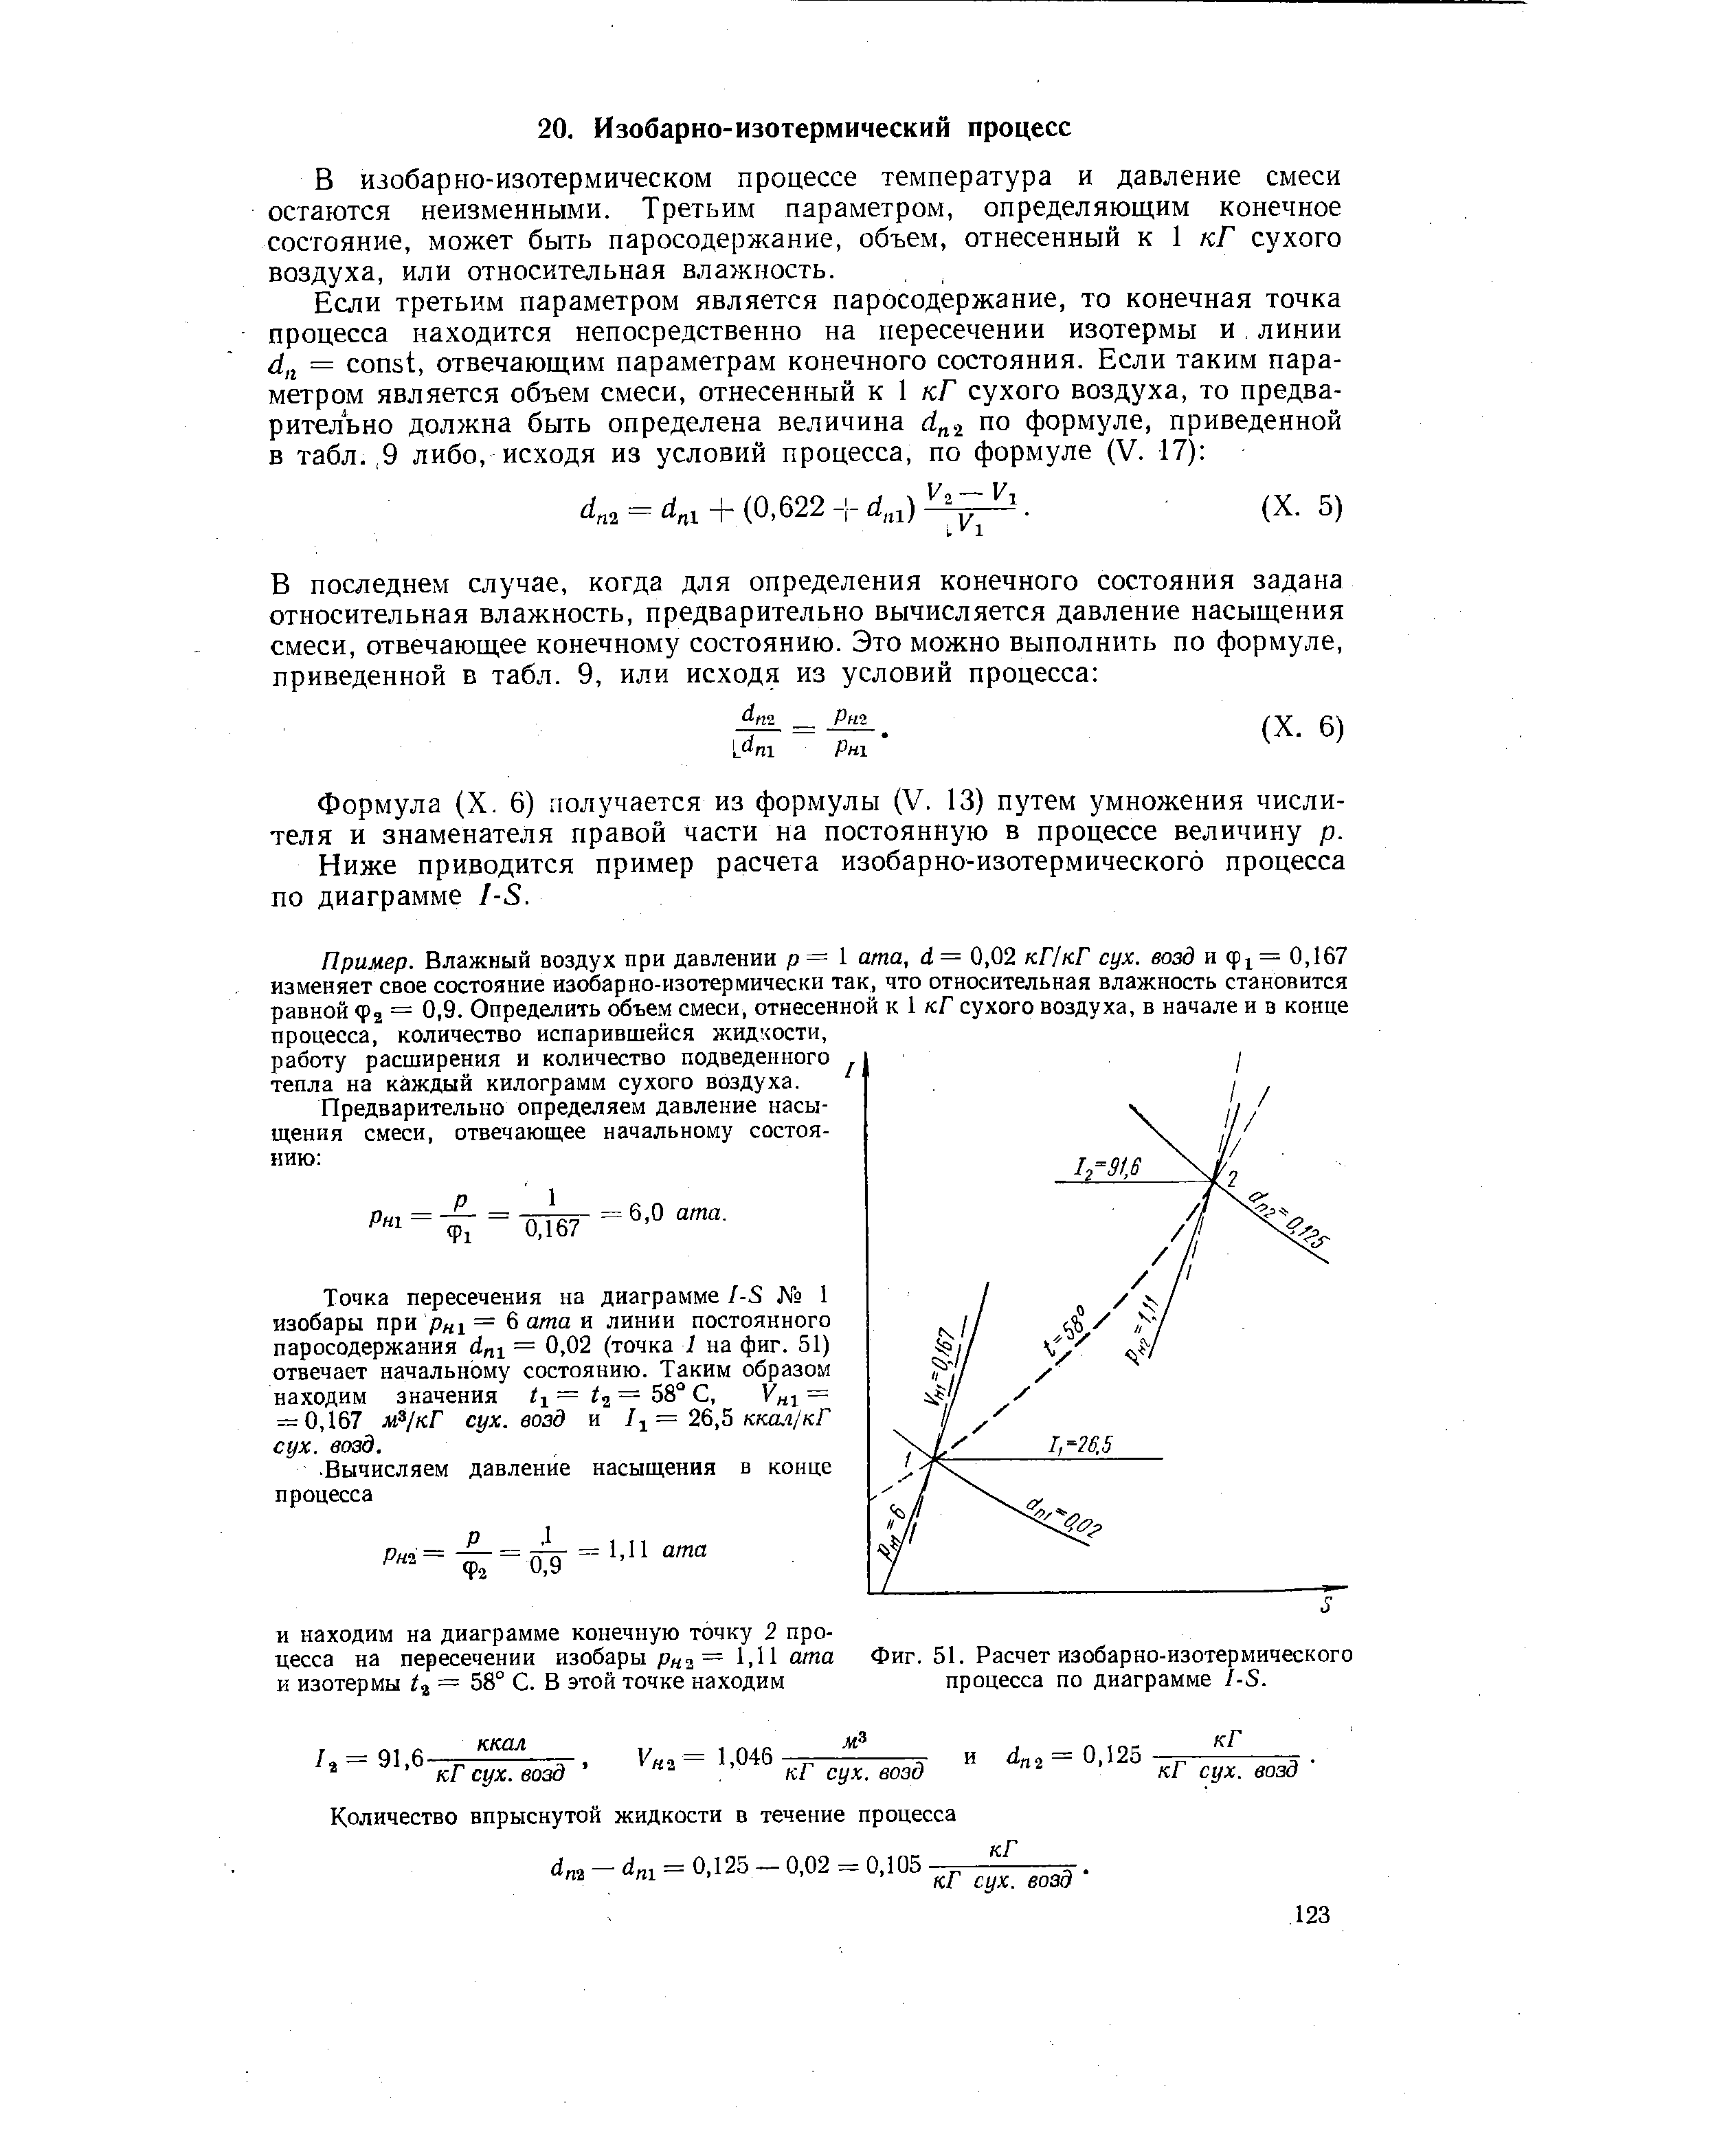 Фиг. 51. Расчет изобарно-изотермического процесса по диаграмме I-S.
